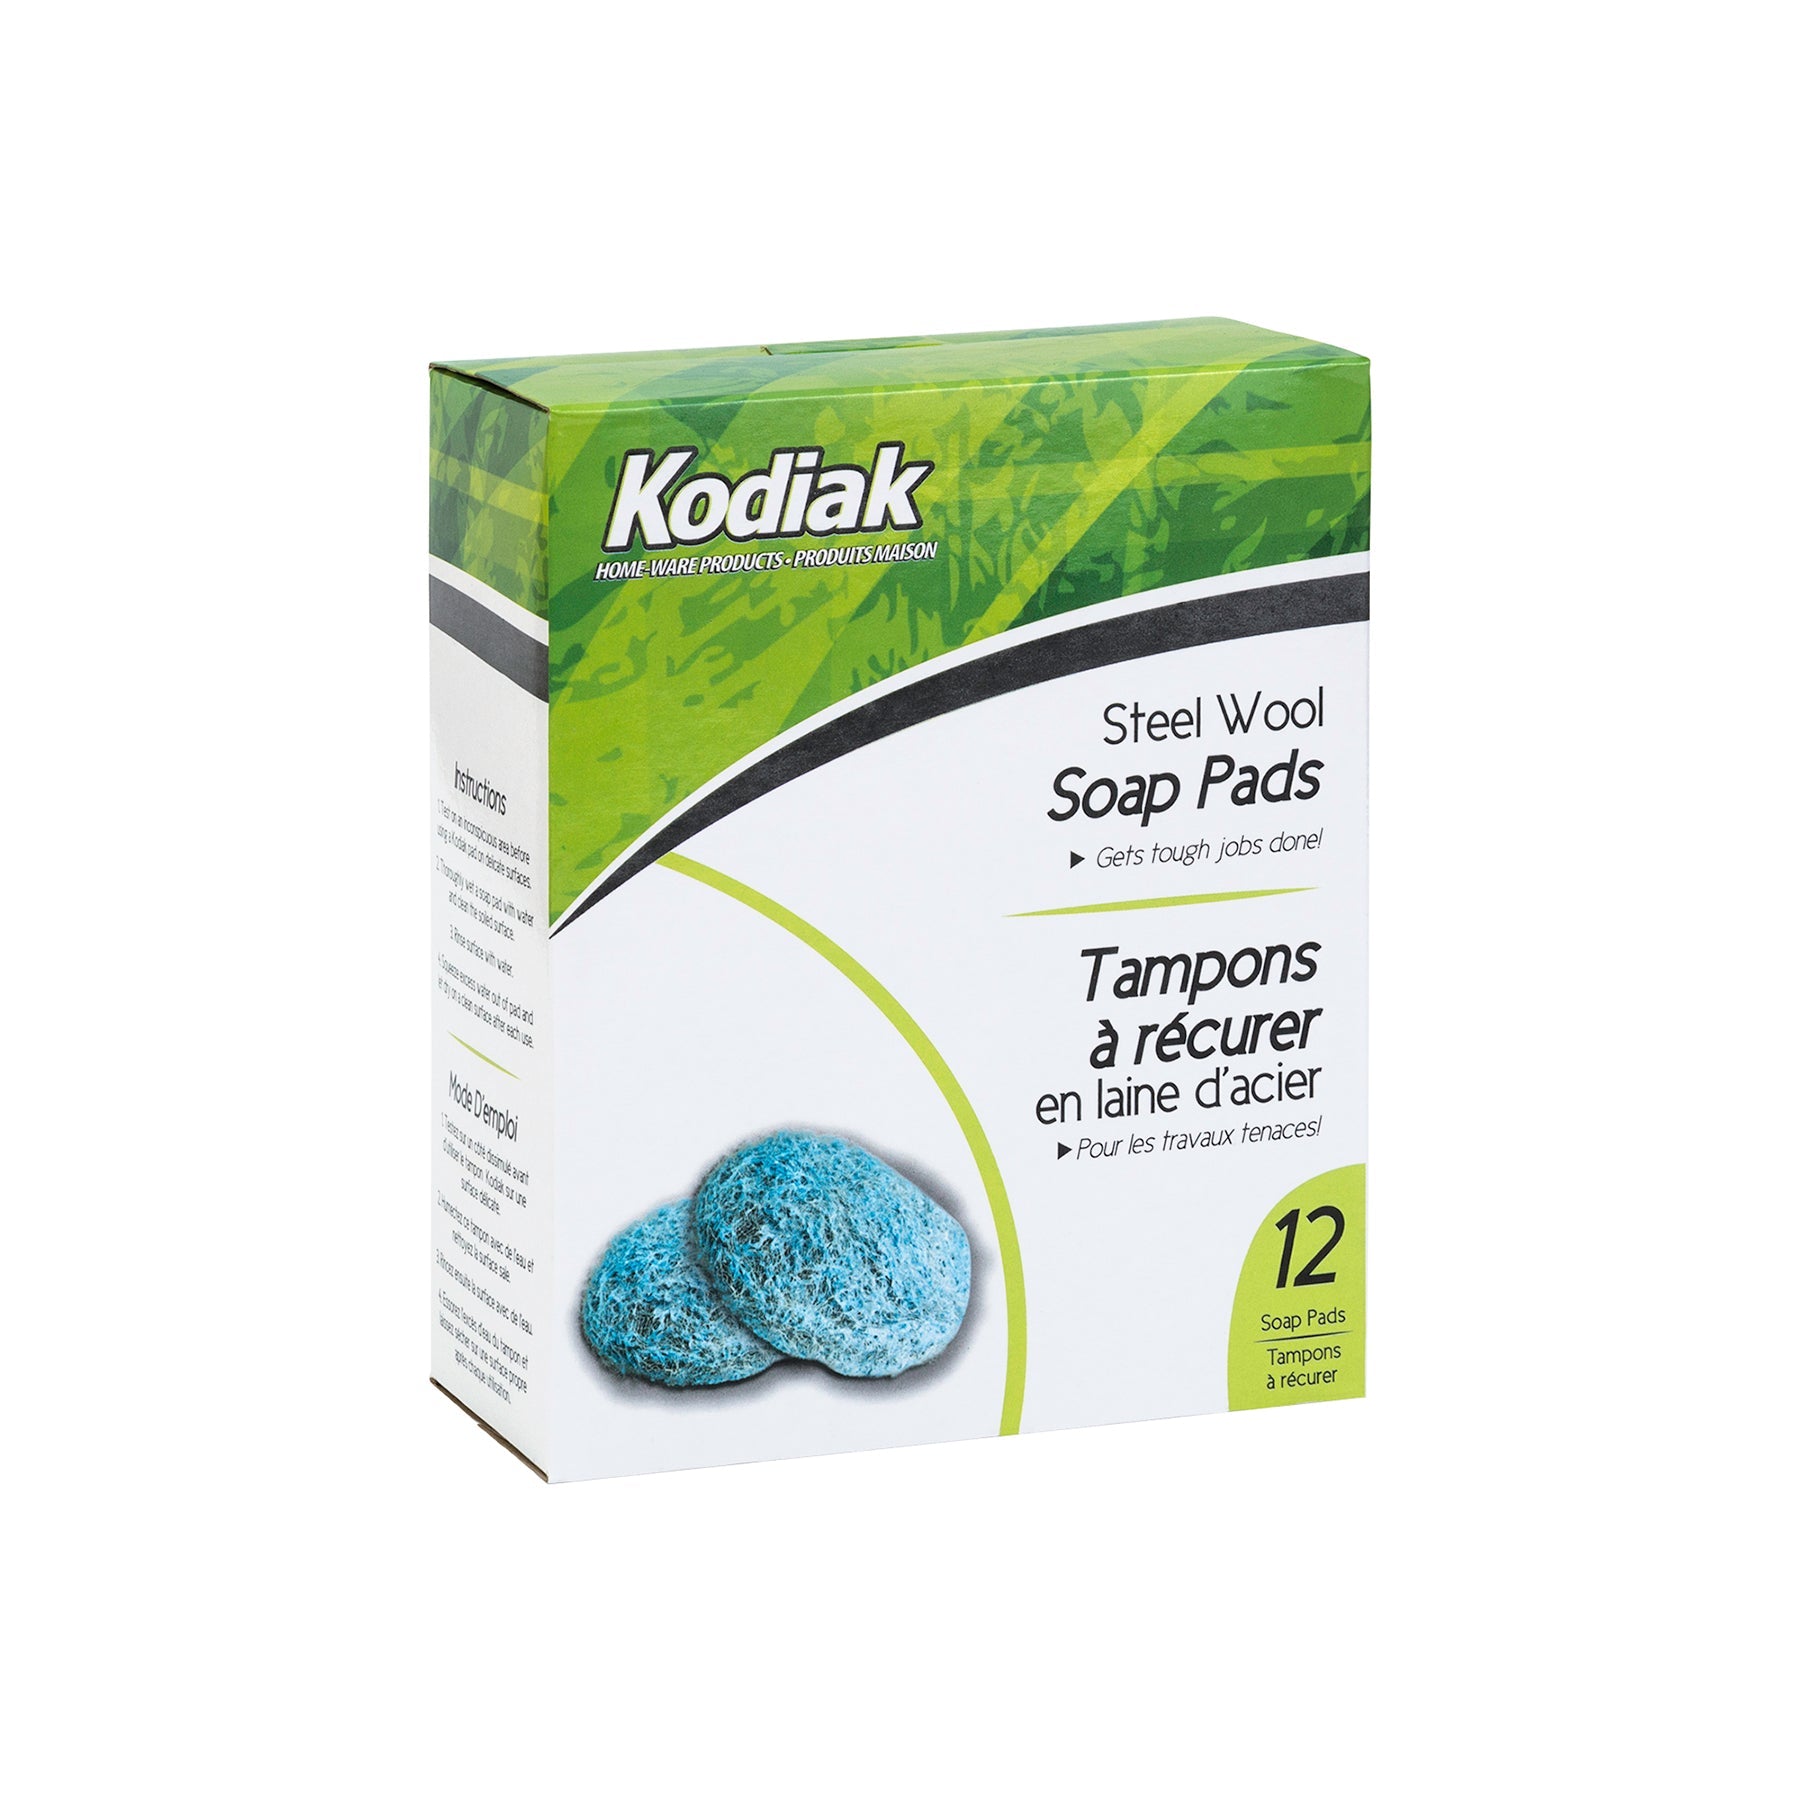 Kodiak 12 Steel Wool Soap Pads 